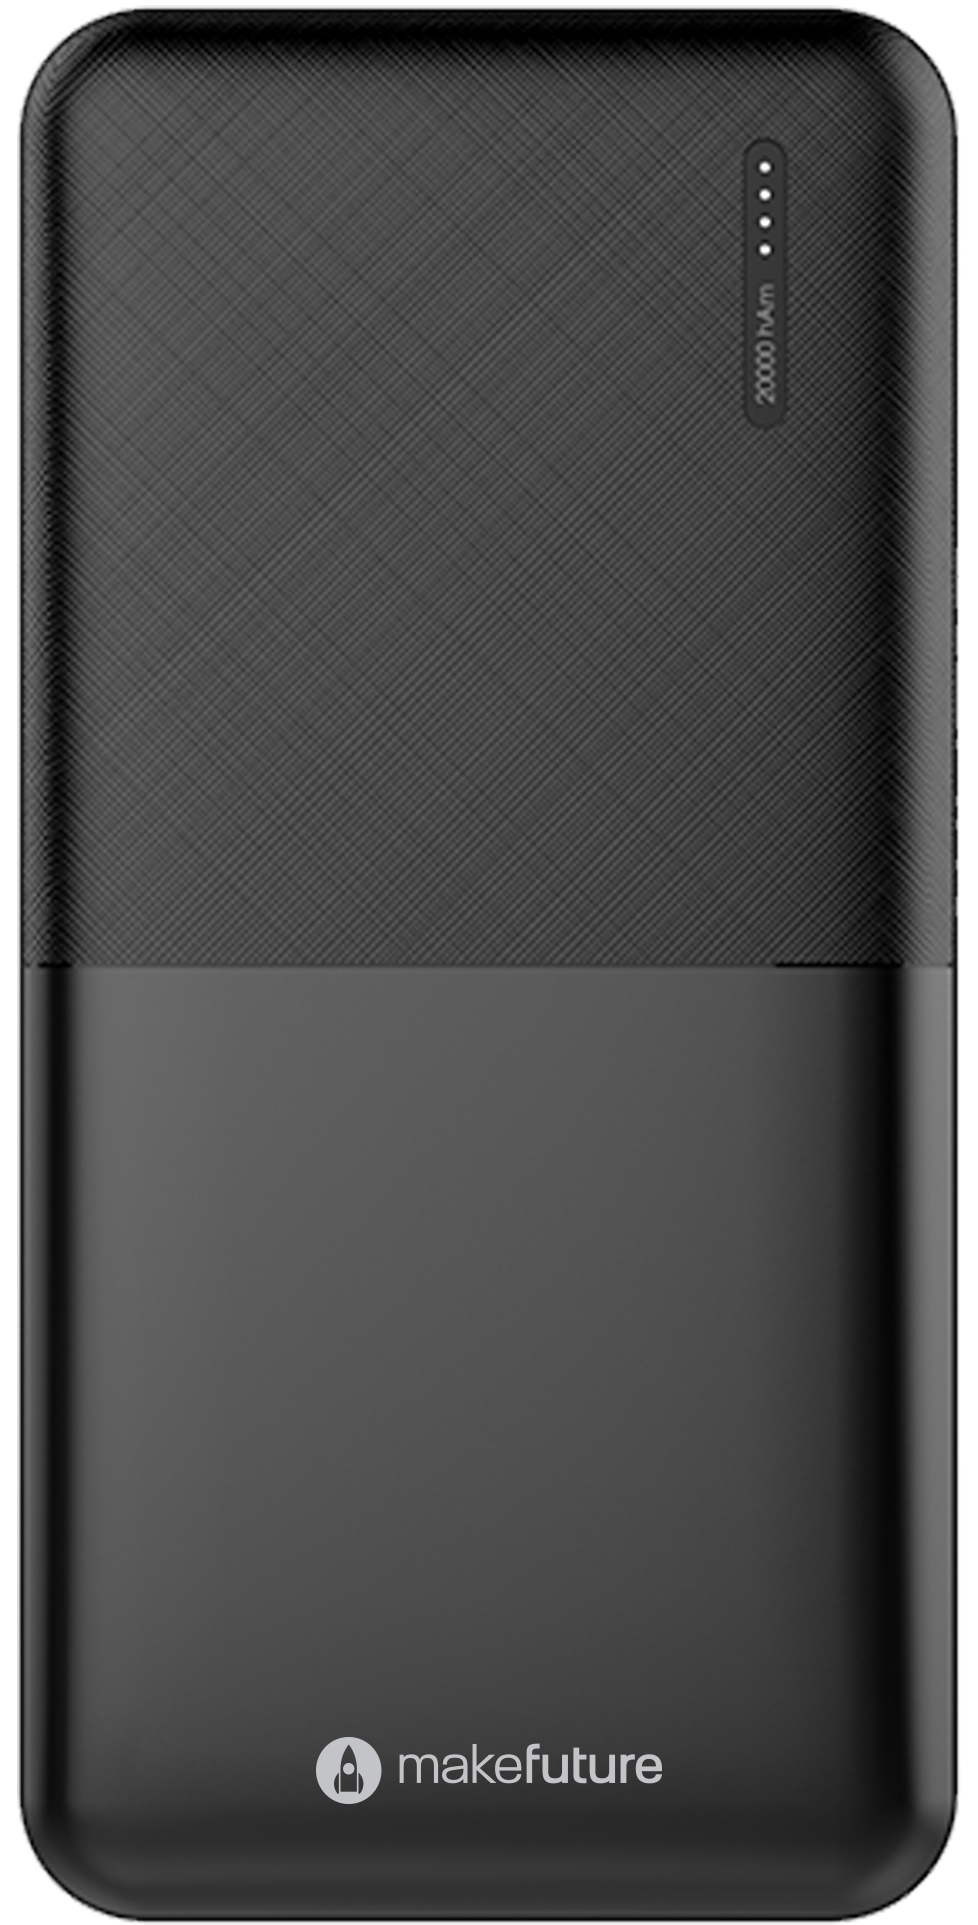 Мобільна батарея MakeFuture Power Bank 20000 mAh Black (MPB-203BK) - фото 1 - samsungshop.com.ua